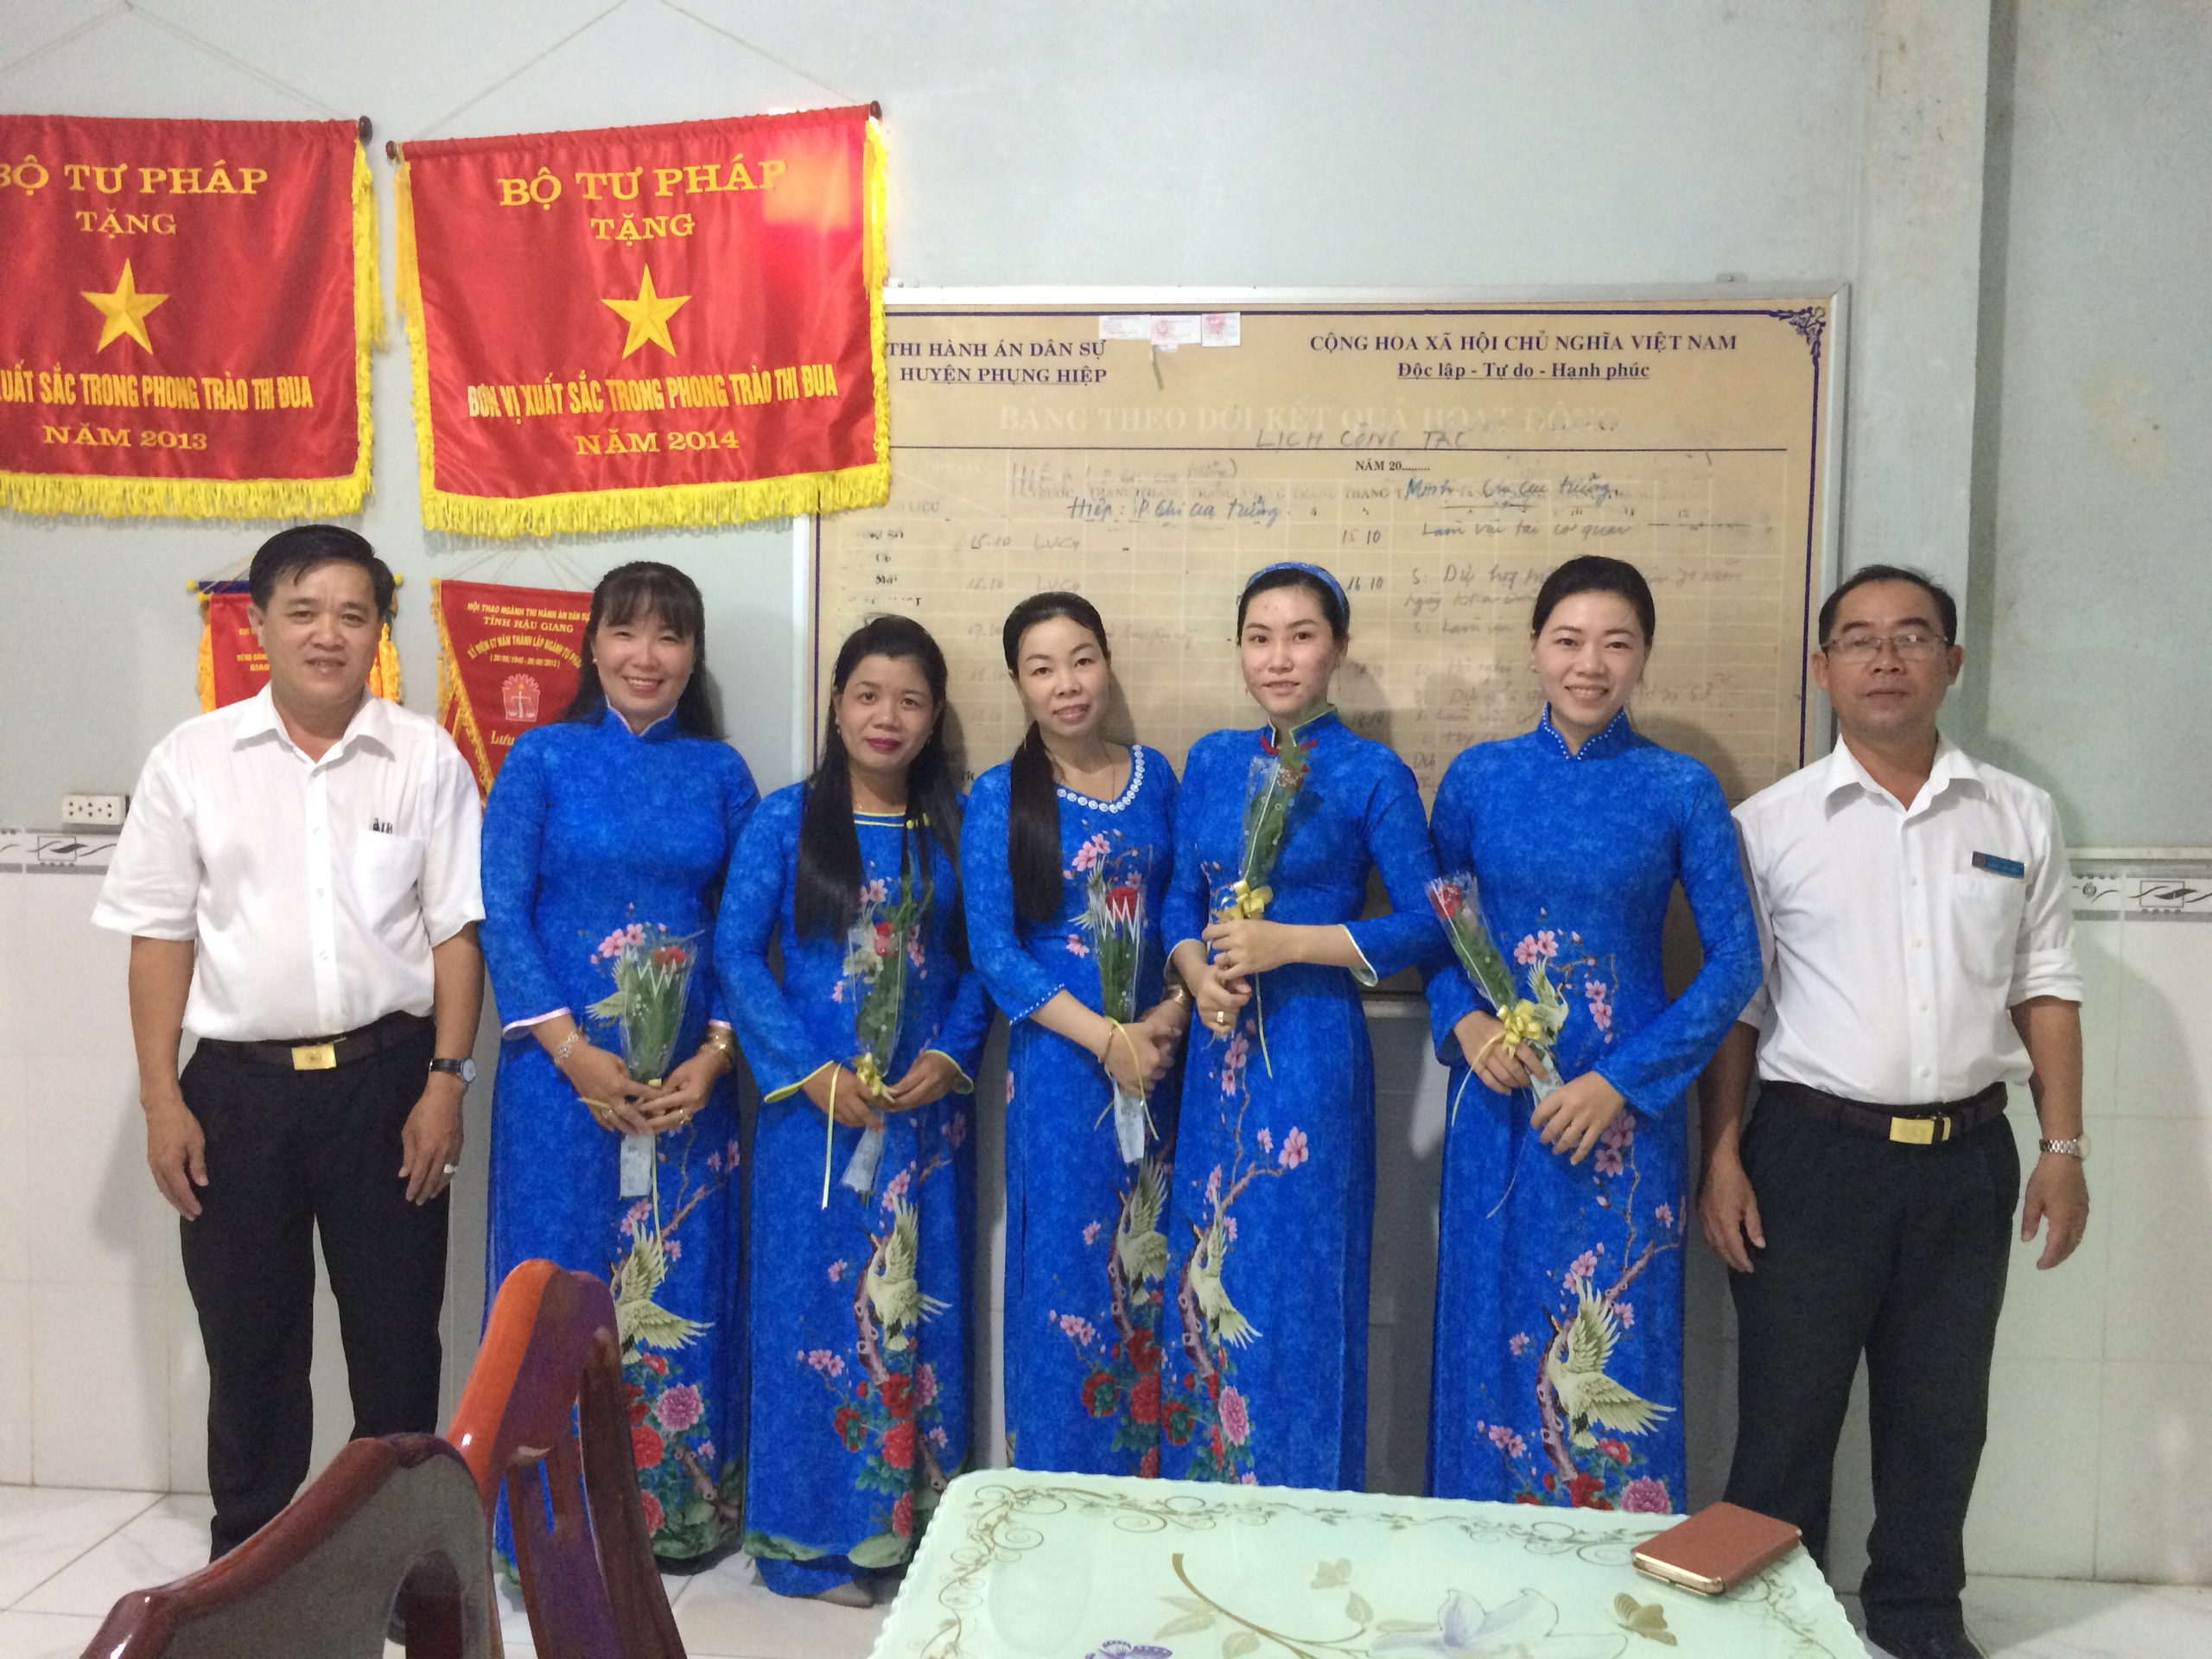 Phụng Hiệp tổ chức Họp mặt kỷ niệm 88 năm Ngày Phụ nữ Việt Nam (20/10/1930 – 20/10/2018)